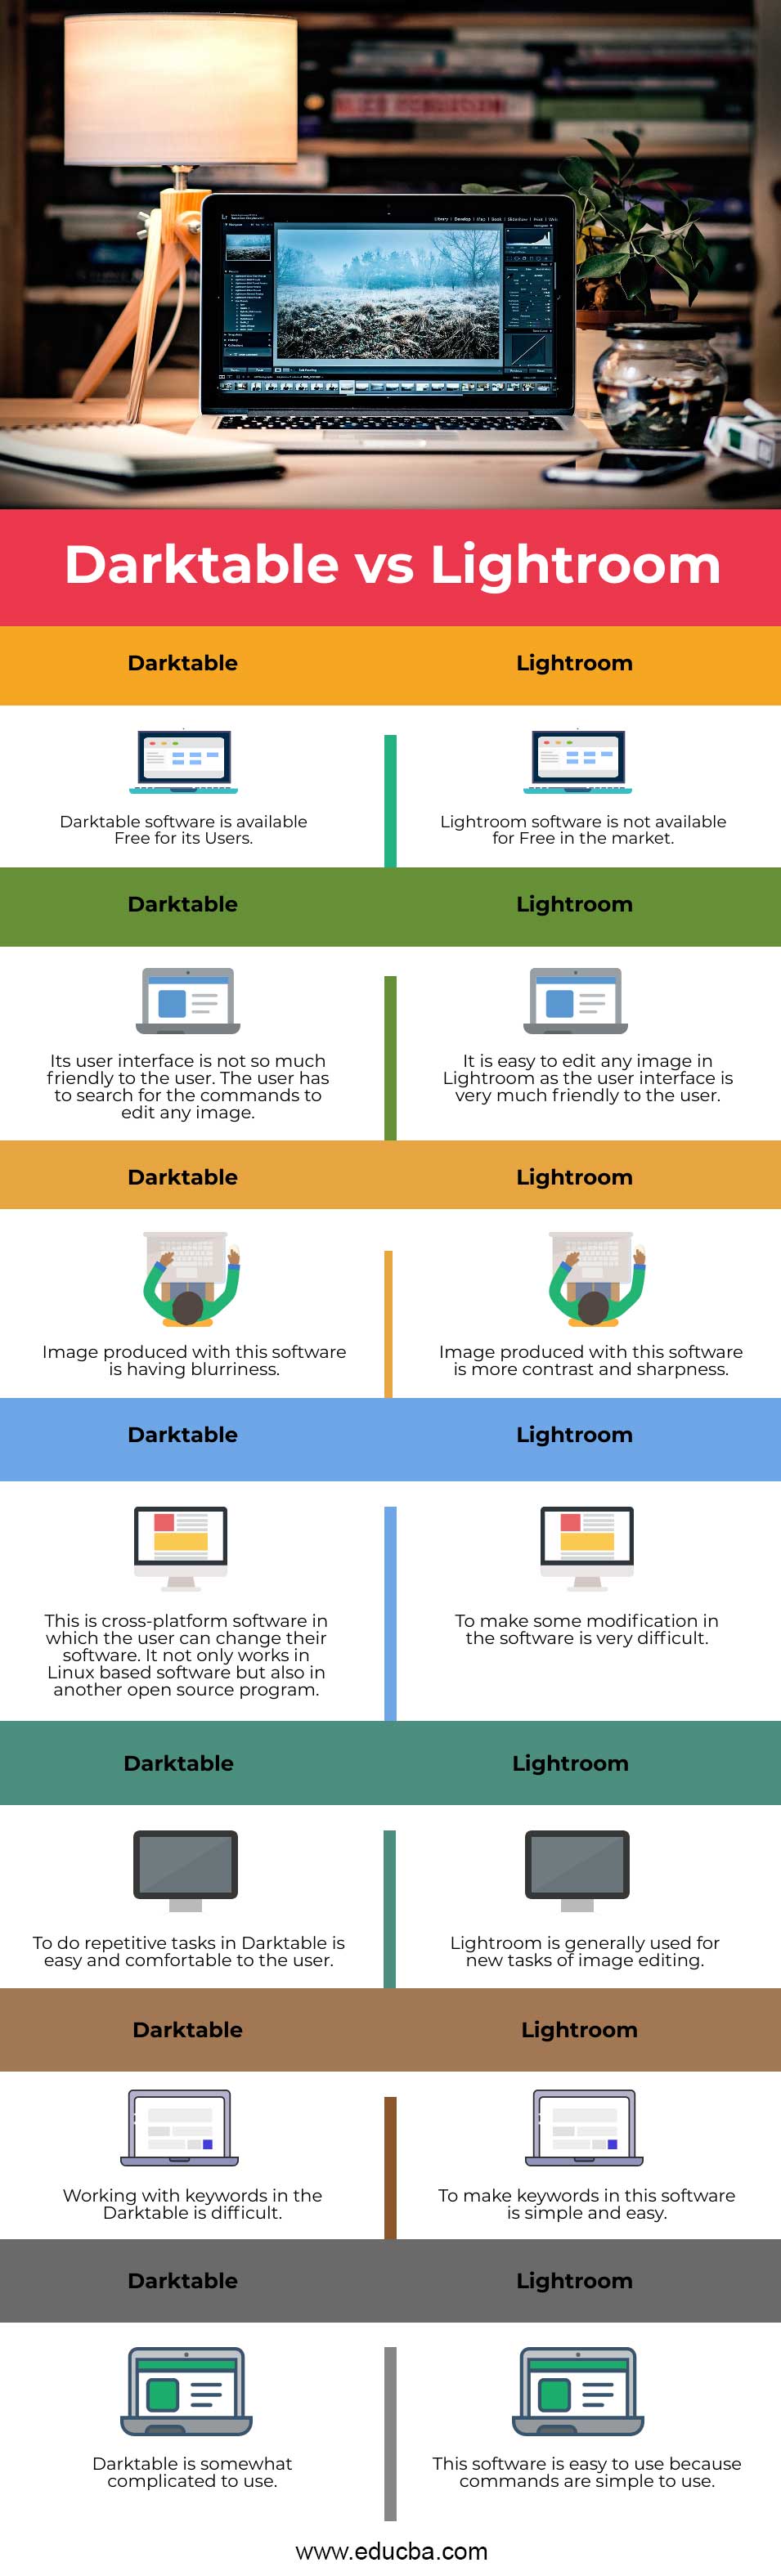 Darktable vs Lightroom Info